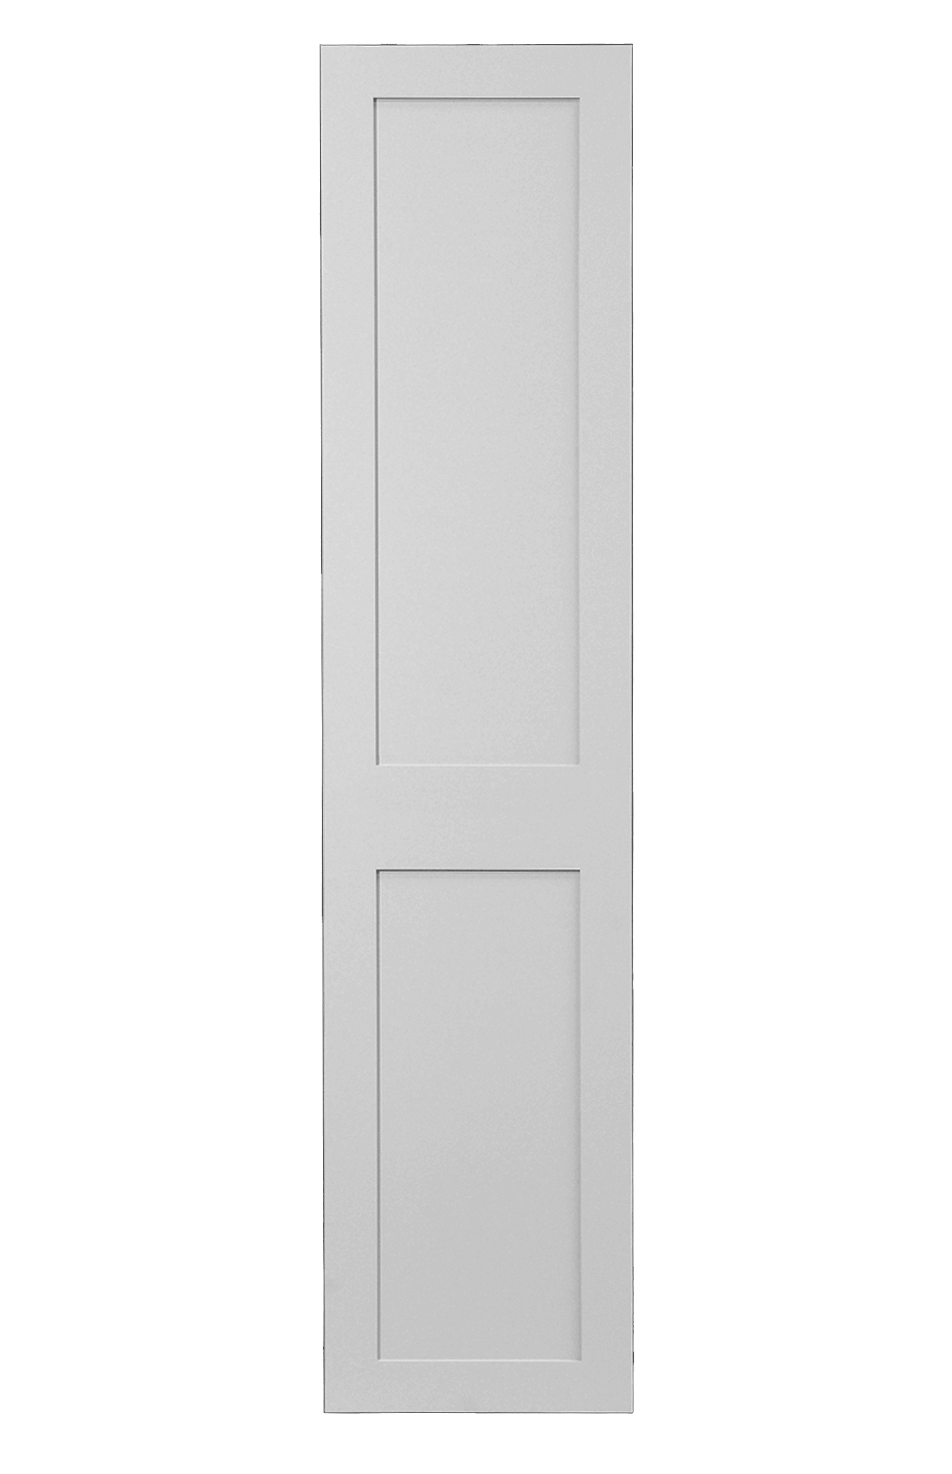 Shaker Doors fitting in 10x4 board